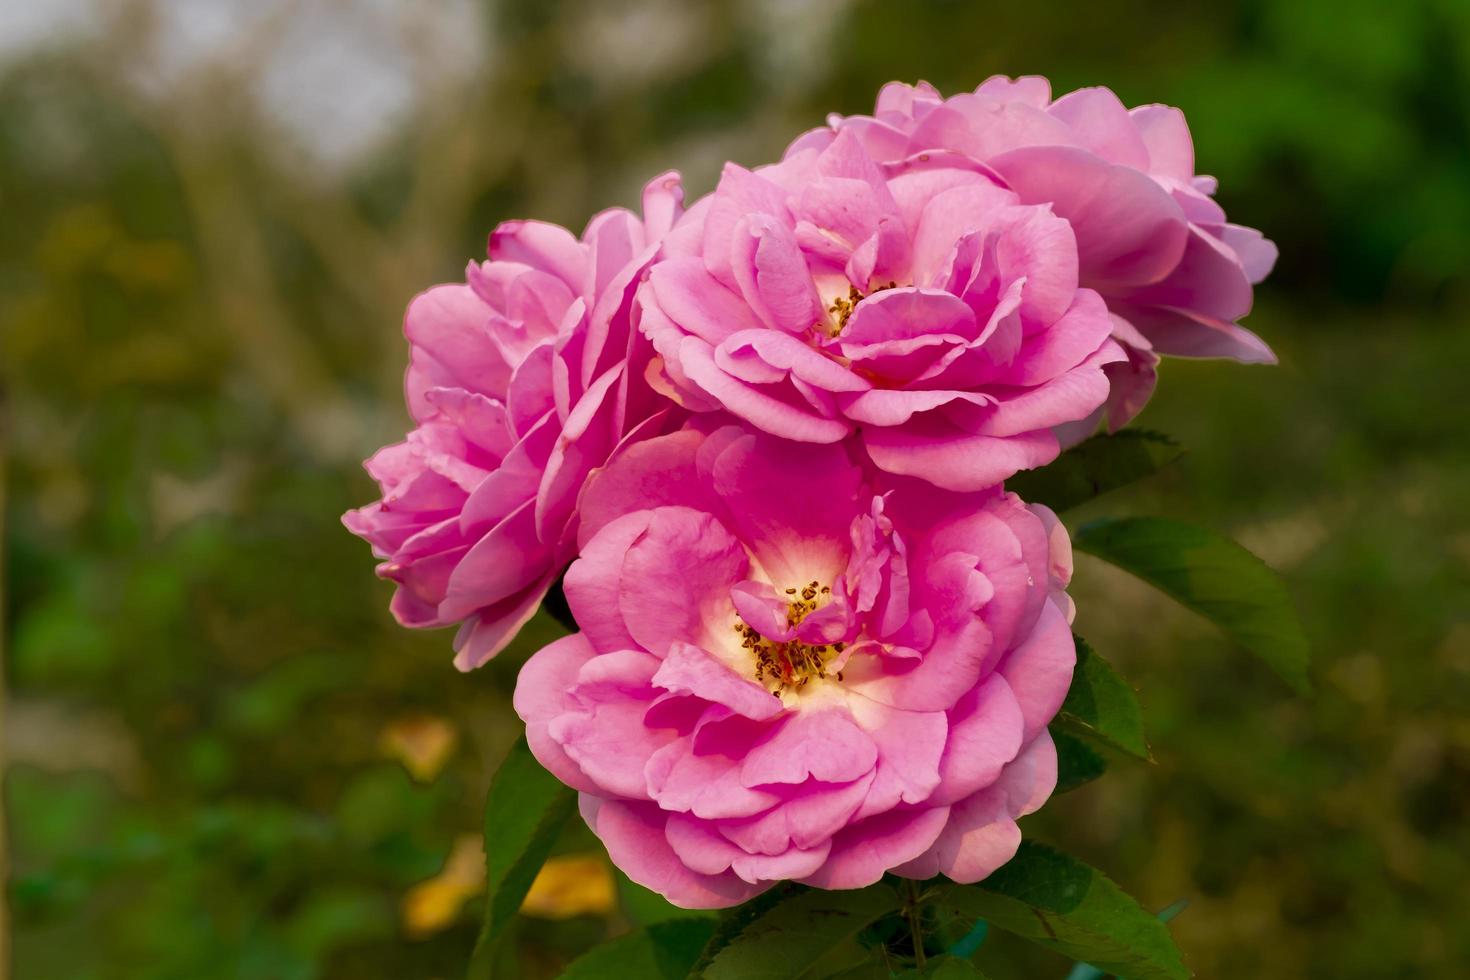 rosa rosa, flores rosas, primer plano rosa rosa su nombre rosa elizabeth en alta definición, pétalos selectivos y foco de polen y entre hojas verdes fondo borroso, macro foto